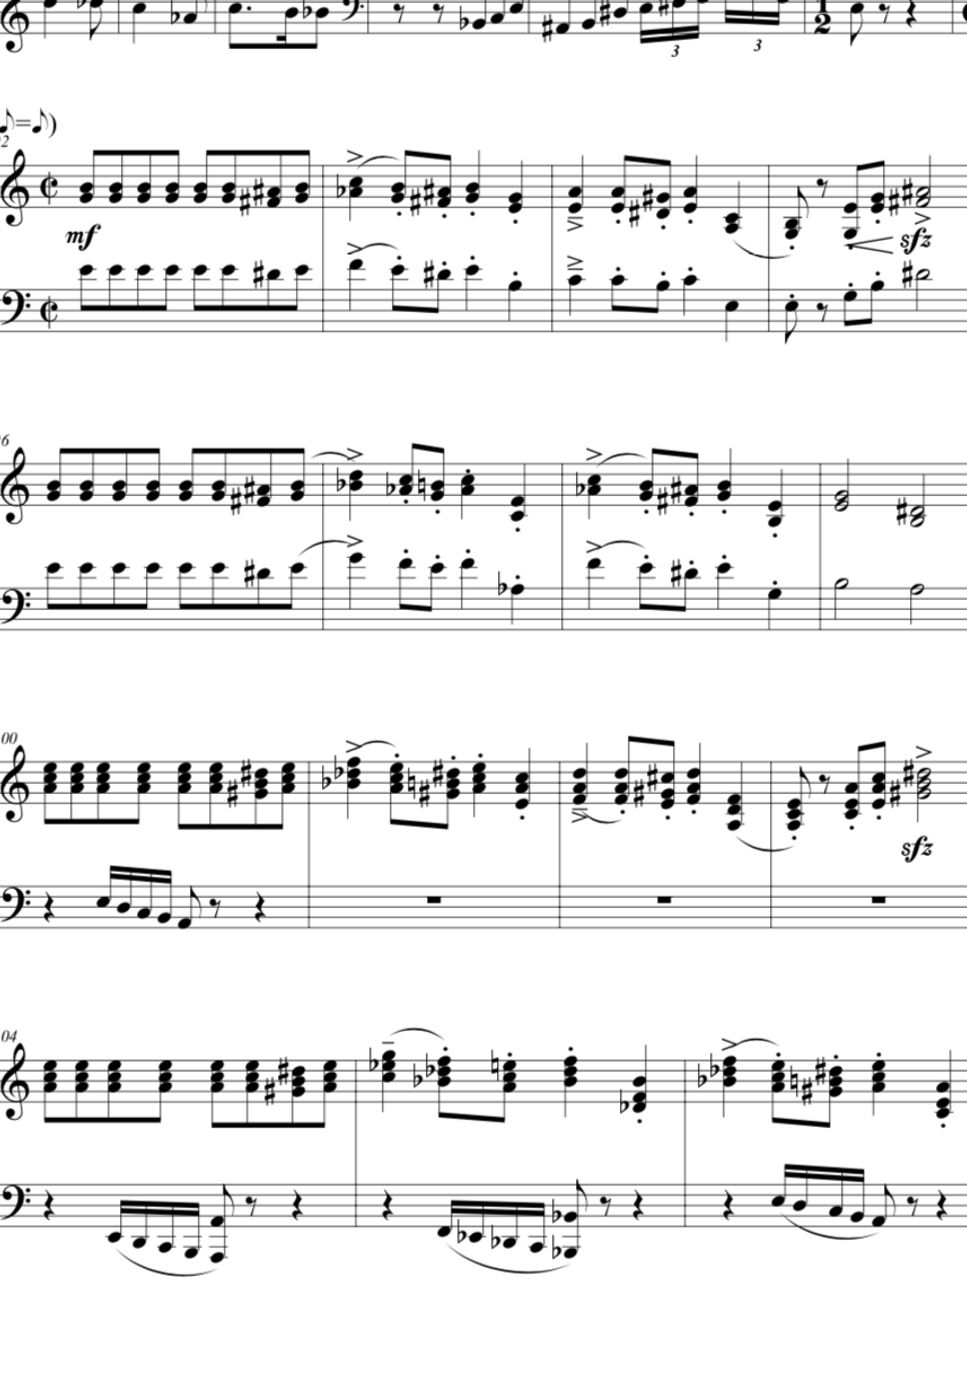 ジョンウィリアムズ - ヘドウィグのテーマ「ハリーポッター」 (２台ピアノ) by 伊藤郁馬